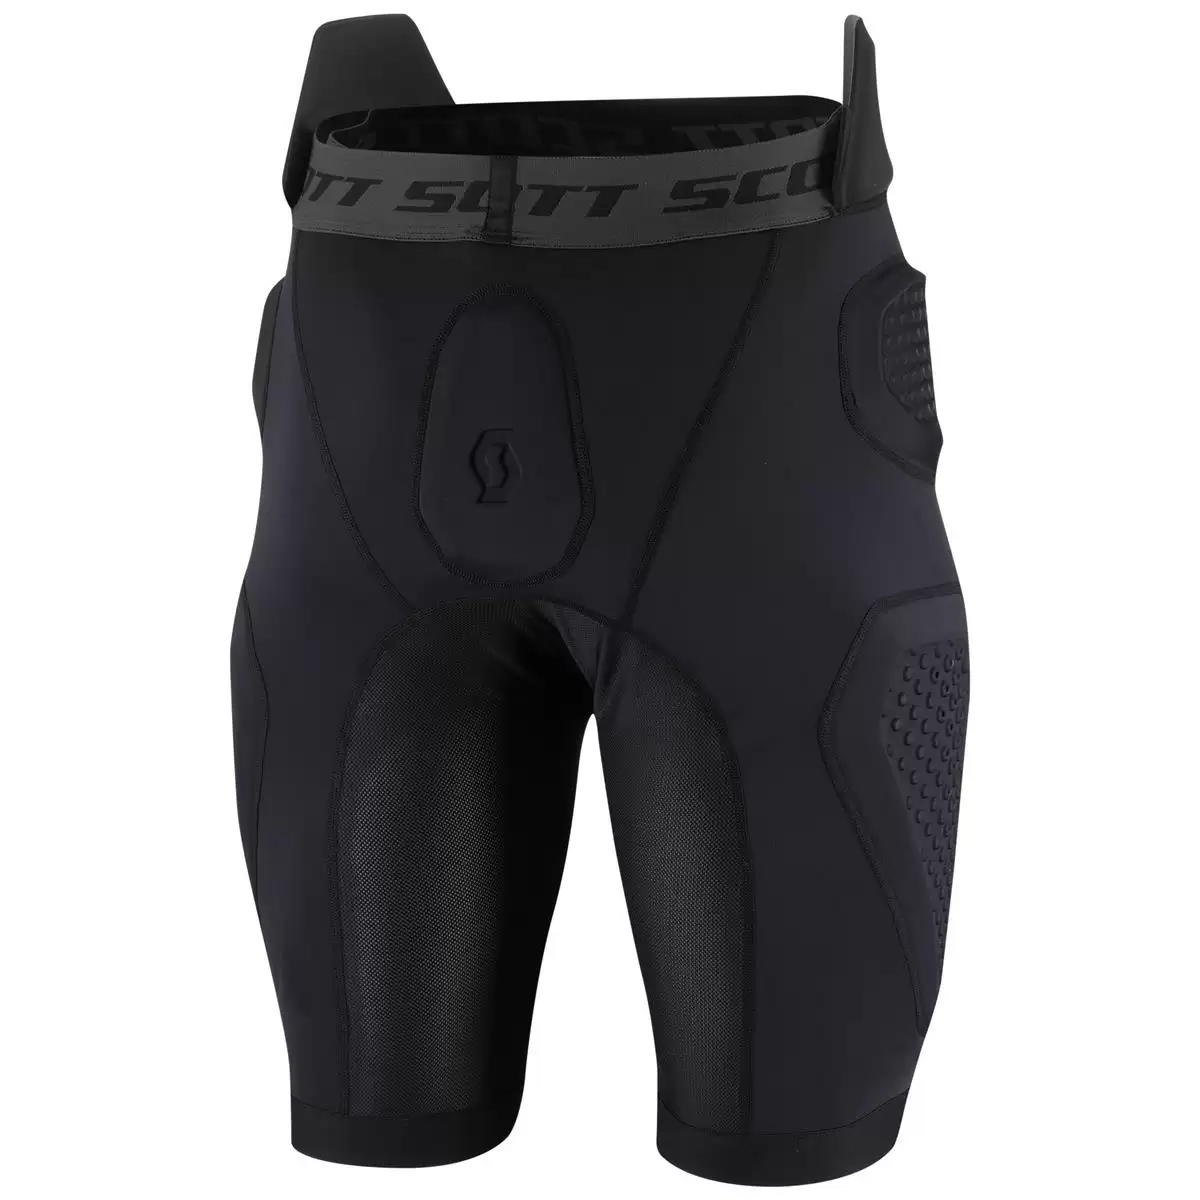 Pantaloncini Softcon air protector nero - Taglia S #1